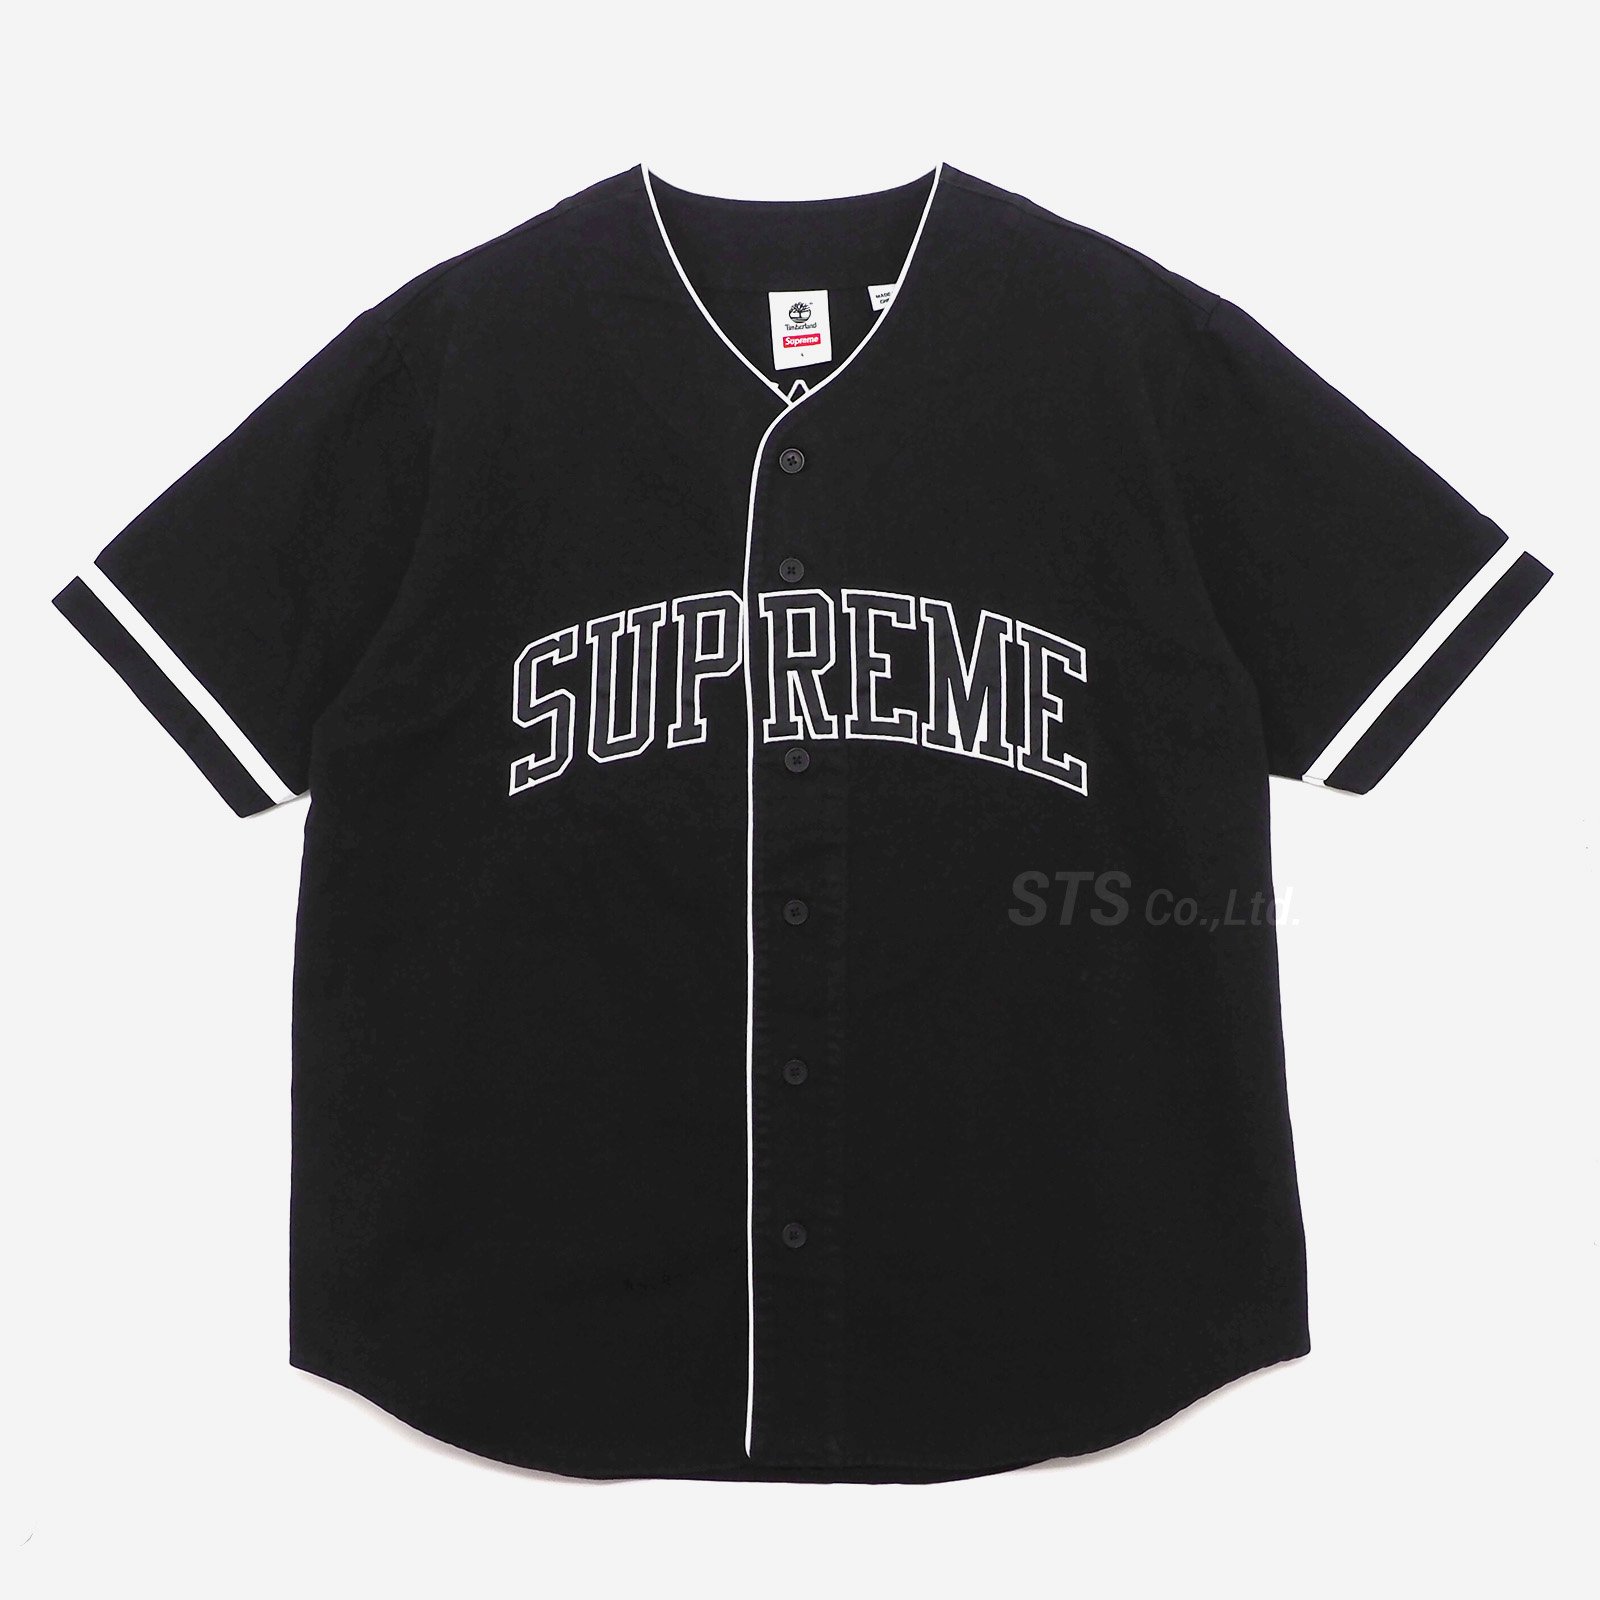 Supreme timberland baseball jersey shirt